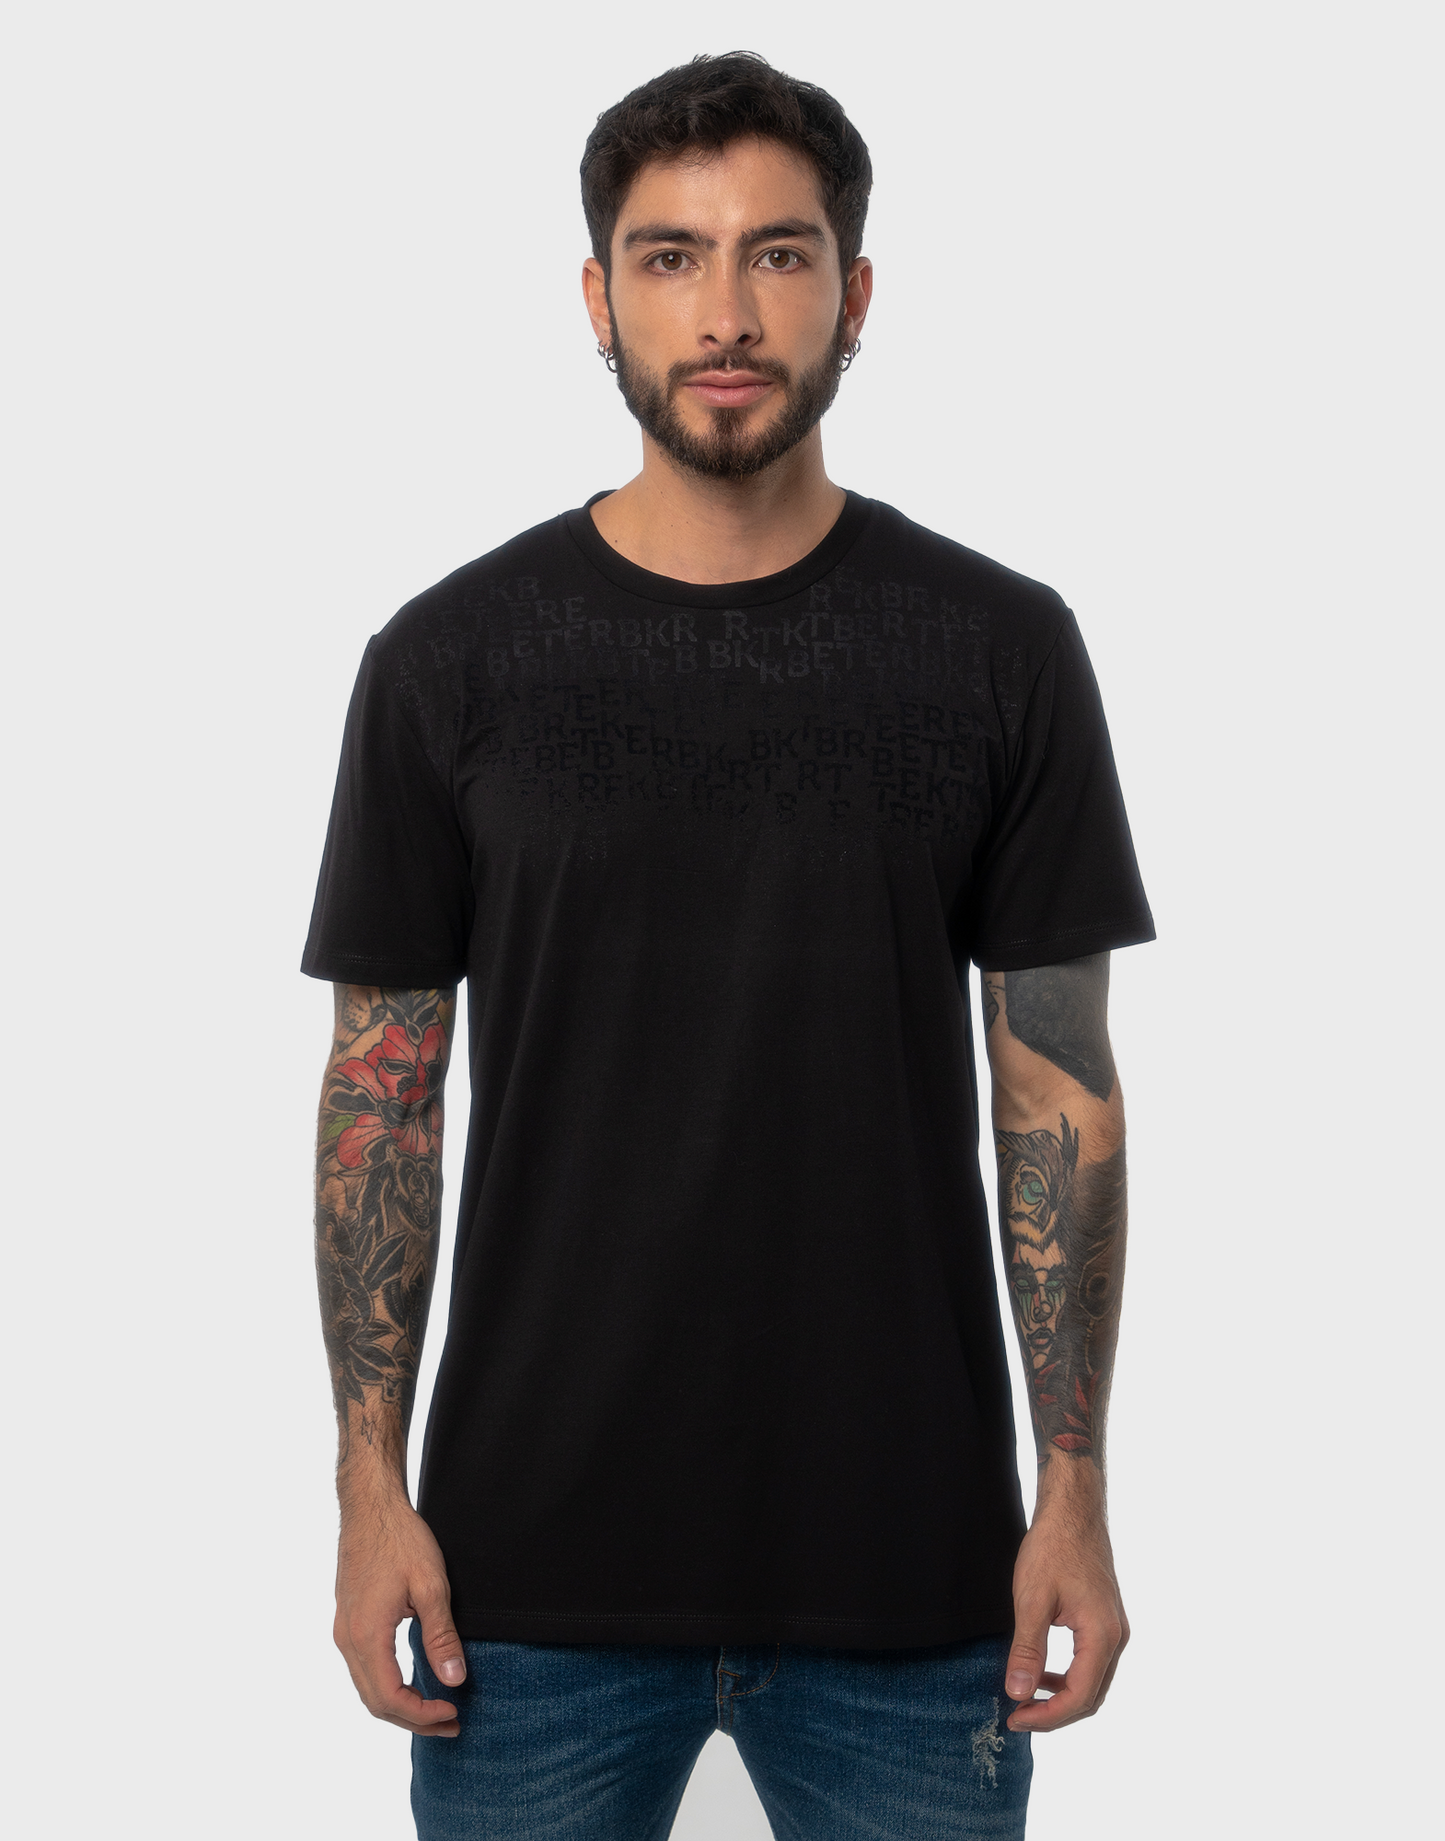 Camiseta hombre estampado negro - N/C